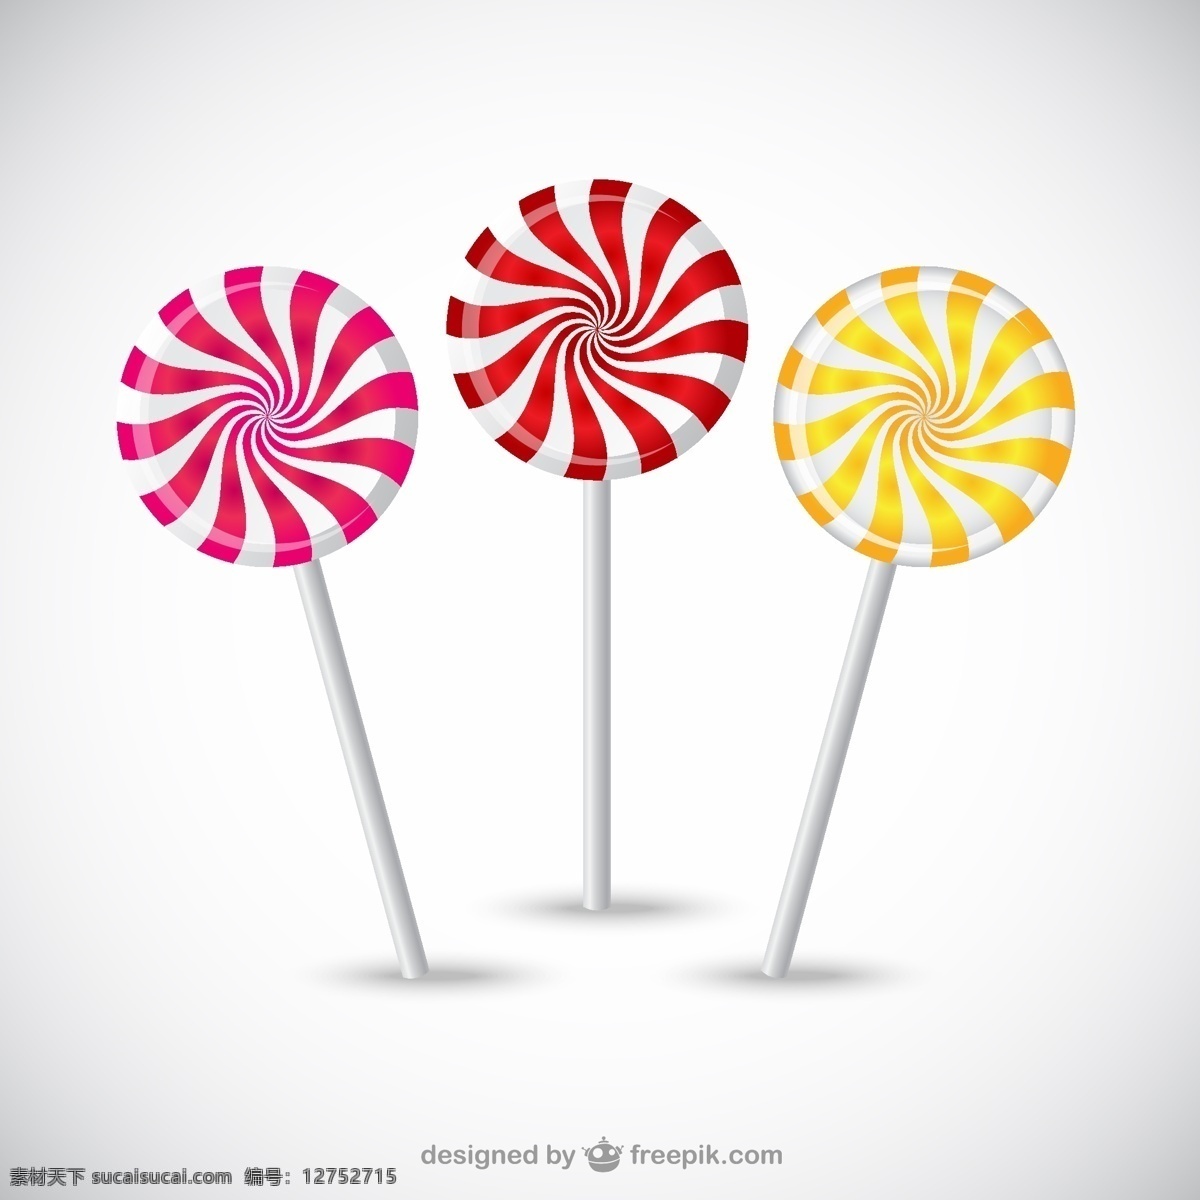 美味 棒棒糖 矢量 螺旋纹 糖果 卡通 甜品 硬糖 水果糖 矢量图